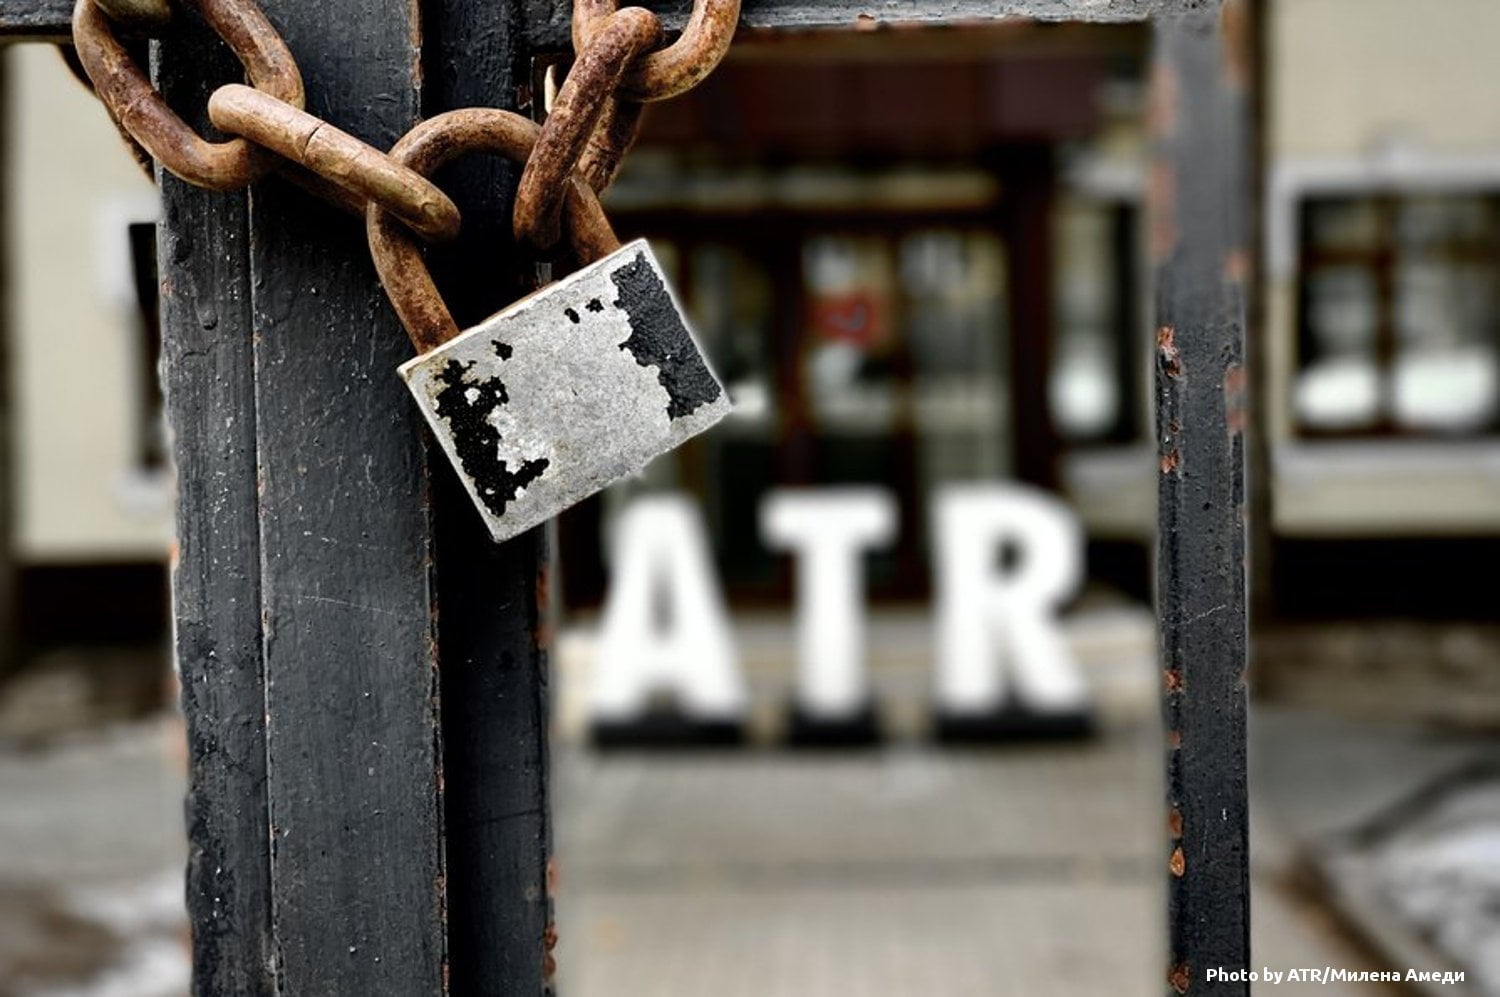 ATR припинив мовлення на окупований Крим через брак фінансування 5